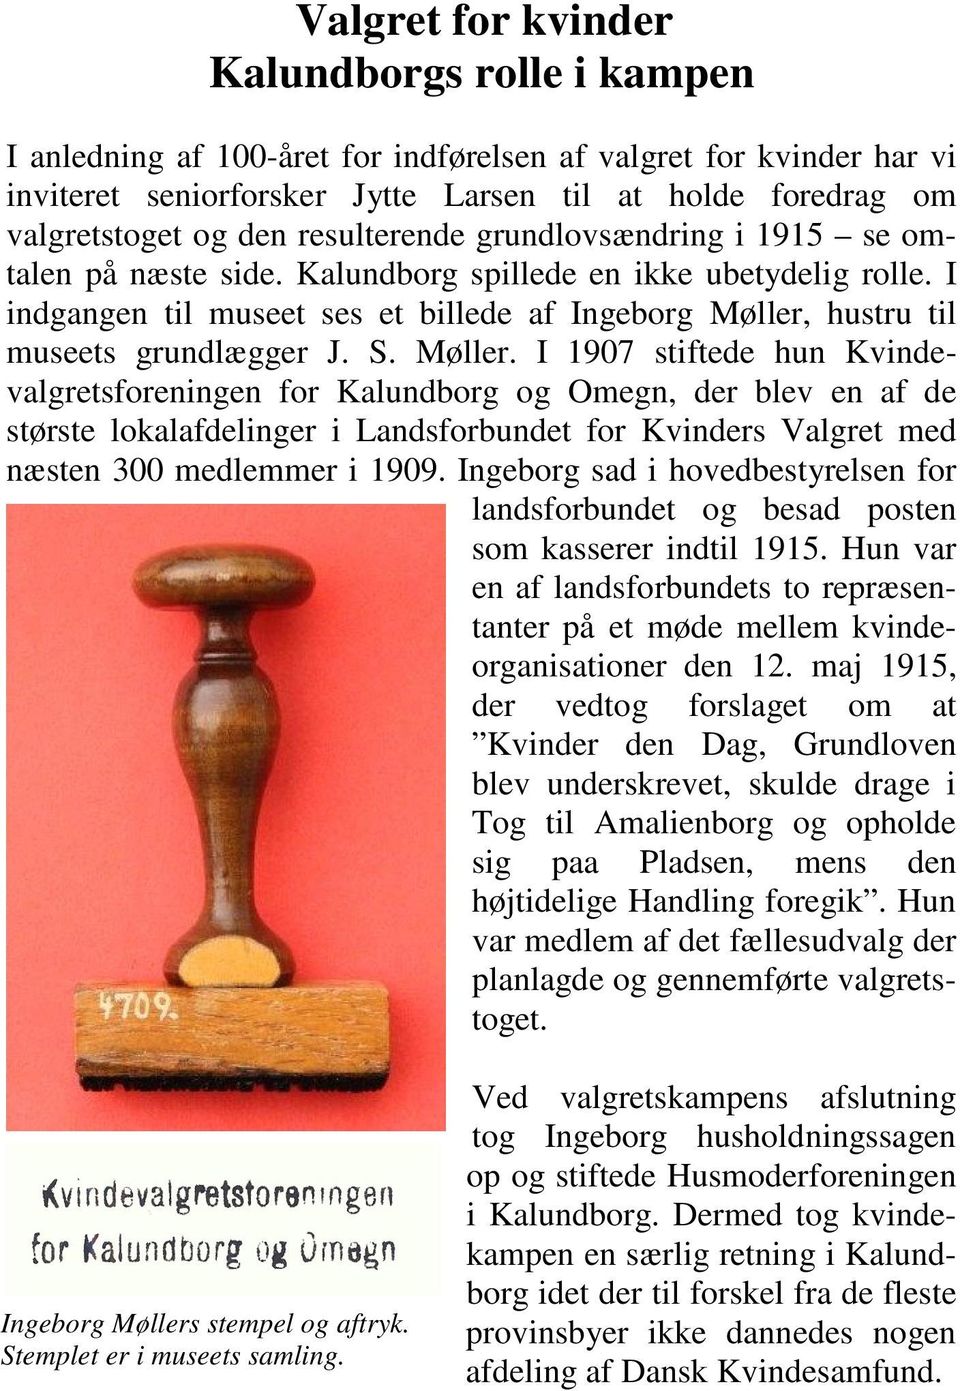 S. Møller. I 1907 stiftede hun Kvindevalgretsforeningen for Kalundborg og Omegn, der blev en af de største lokalafdelinger i Landsforbundet for Kvinders Valgret med næsten 300 medlemmer i 1909.